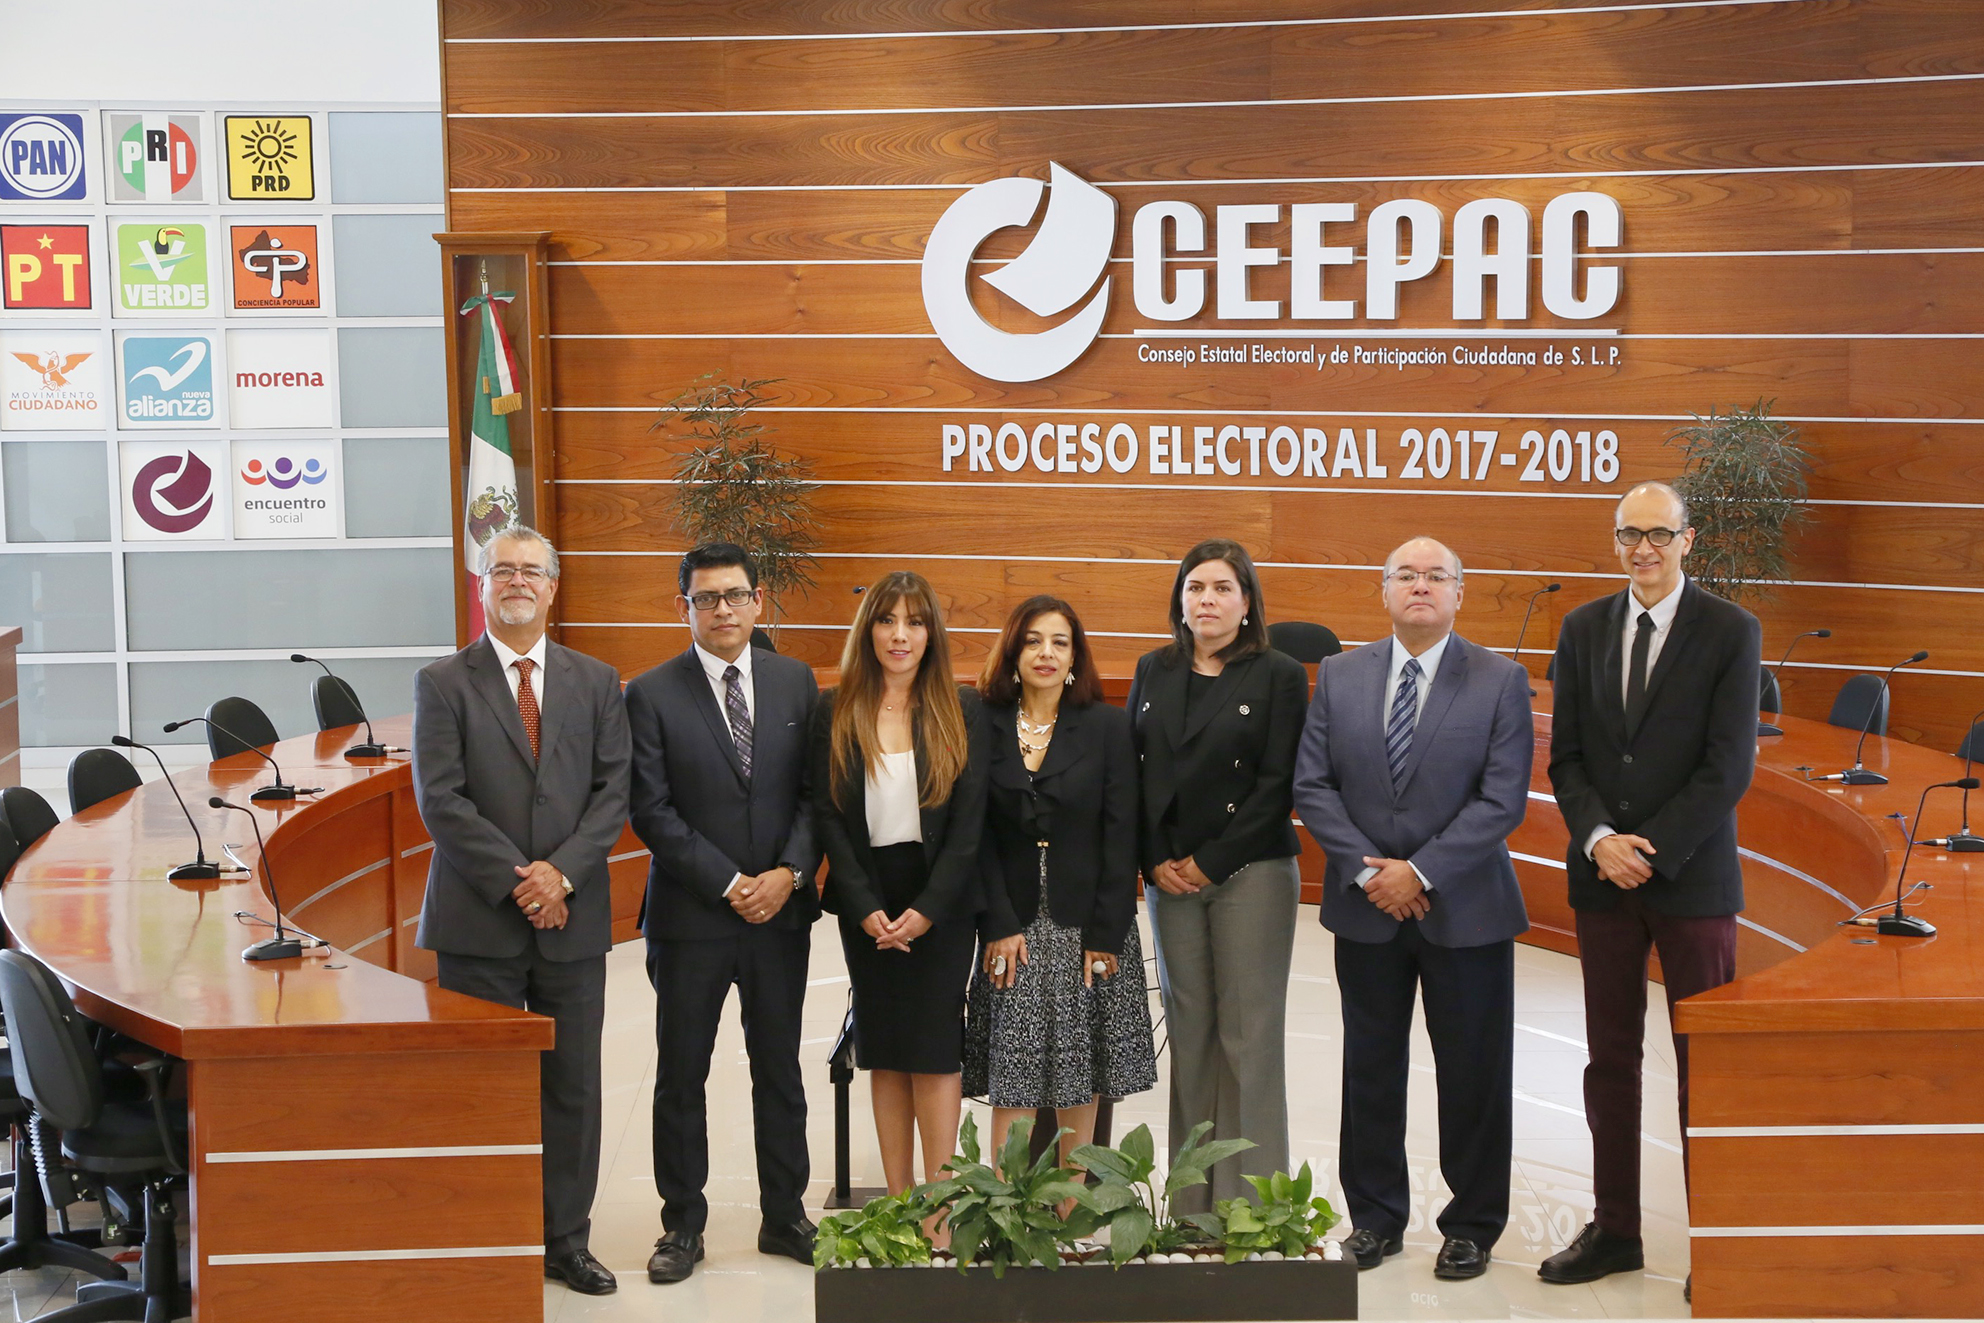  En renovación parcial del CEEPAC: El elector no debe votar a cambio de dádivas